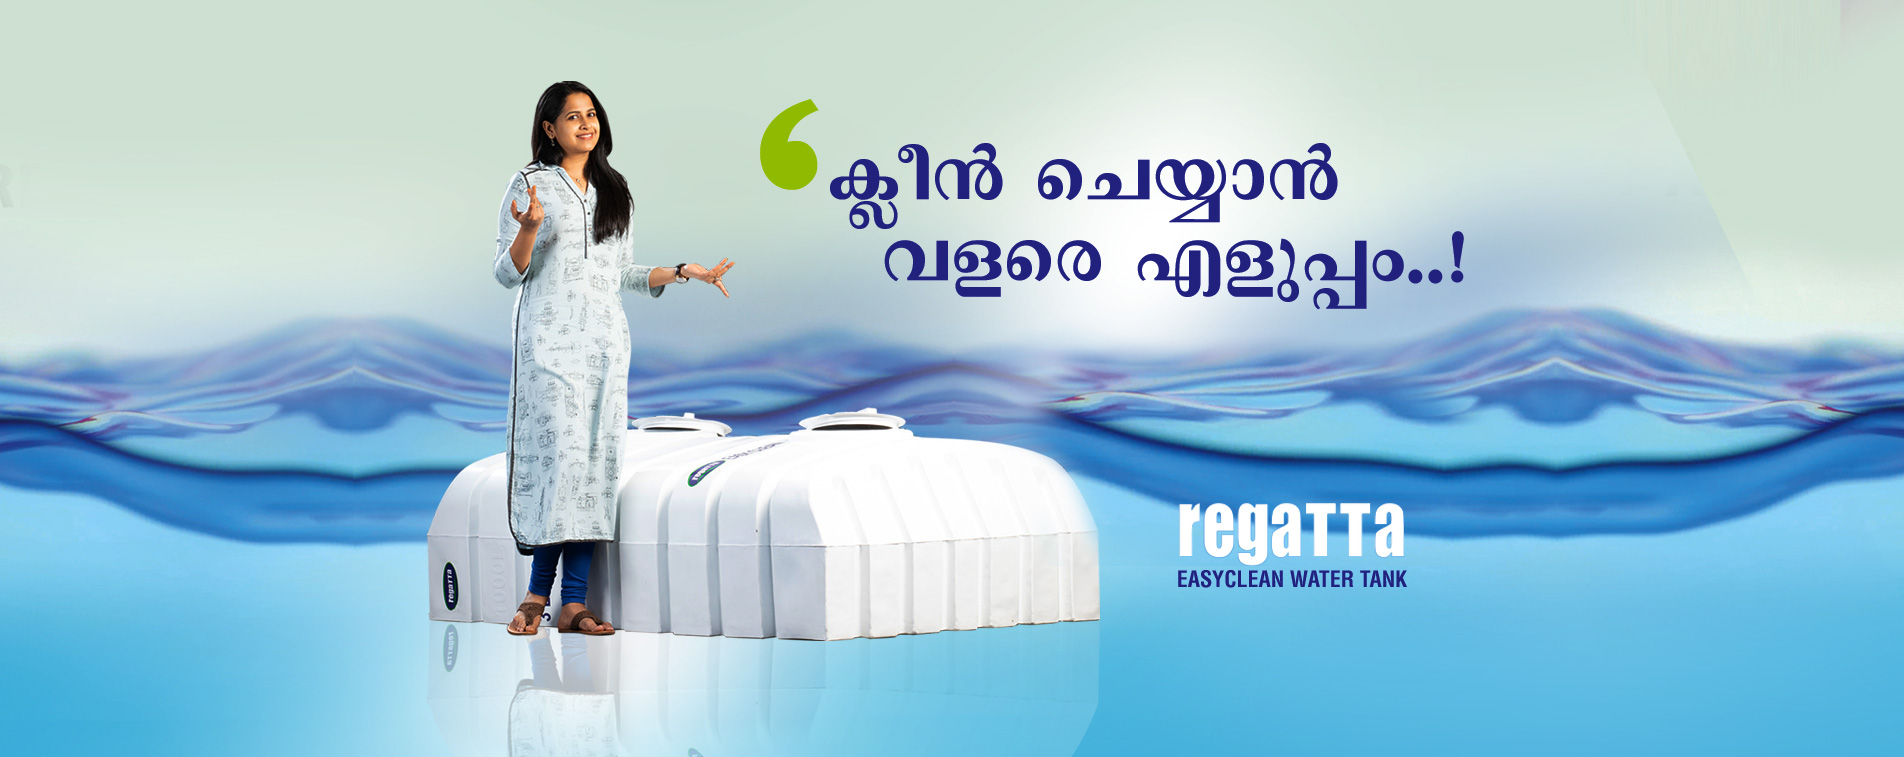 water tank manufacturer kerala